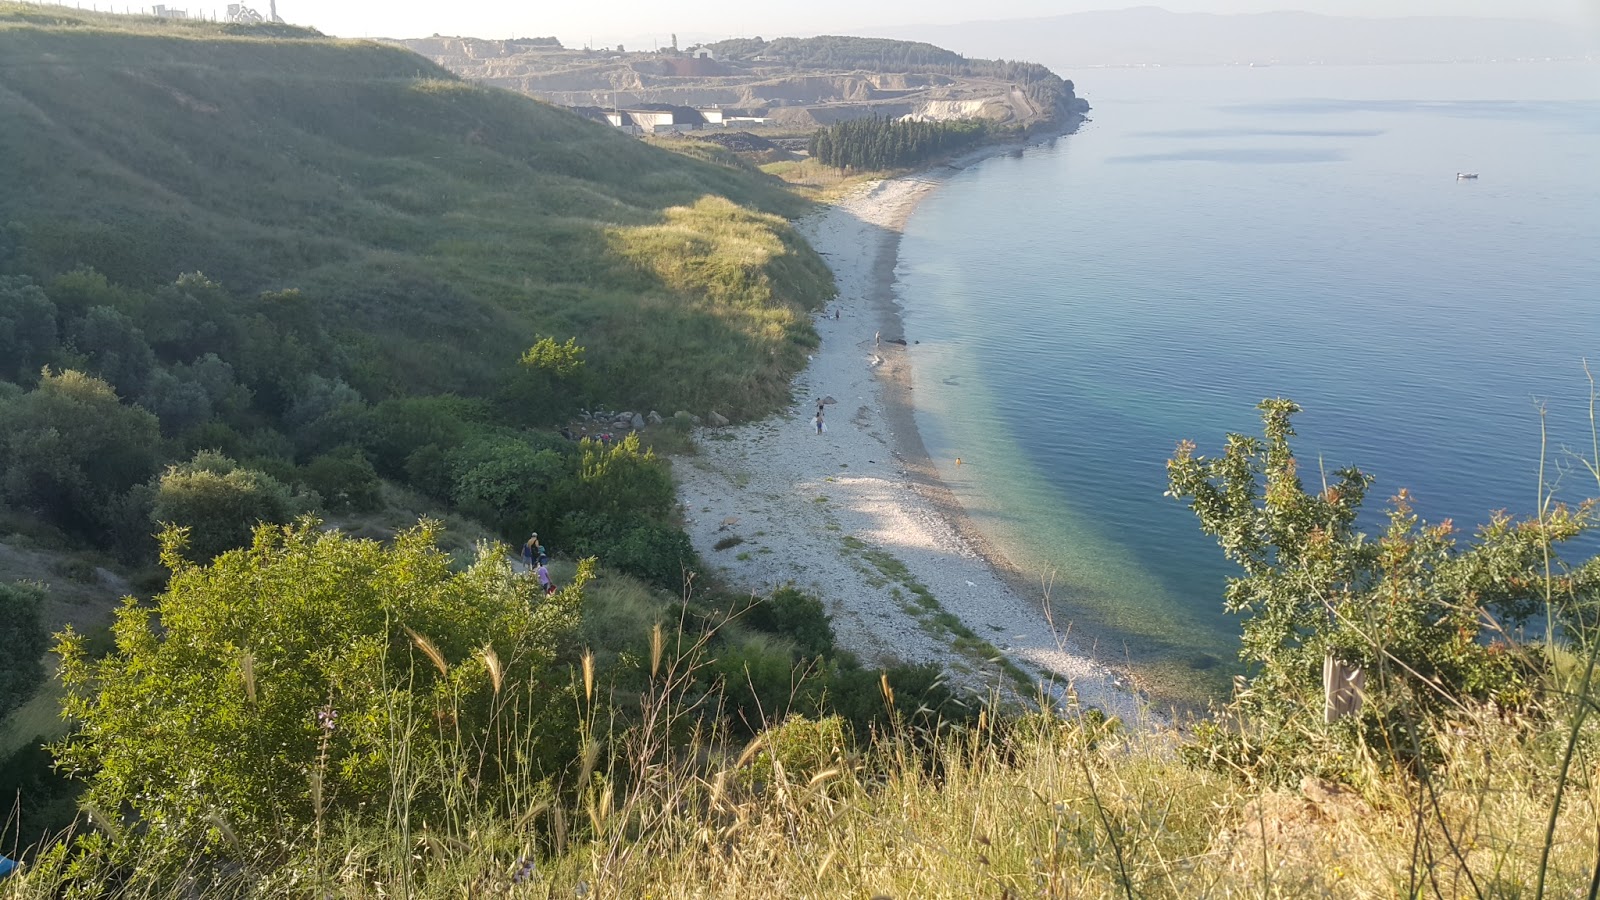 Darıca Plajı III'in fotoğrafı hafif çakıl yüzey ile